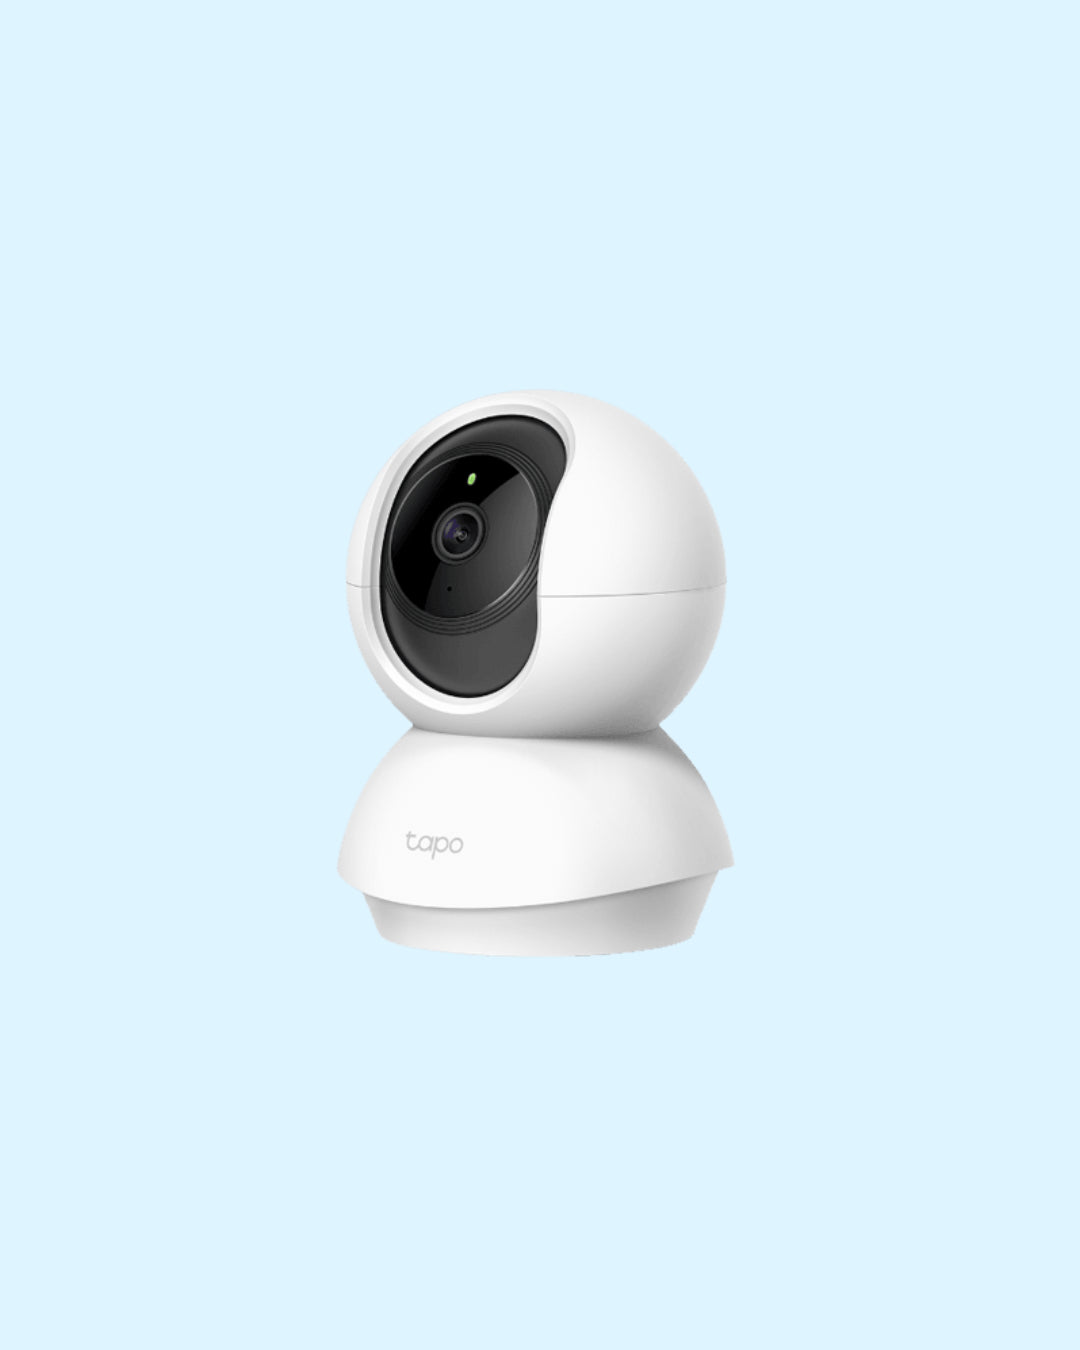 Tapo Pan/Tilt Home Security Wi-Fi Camera